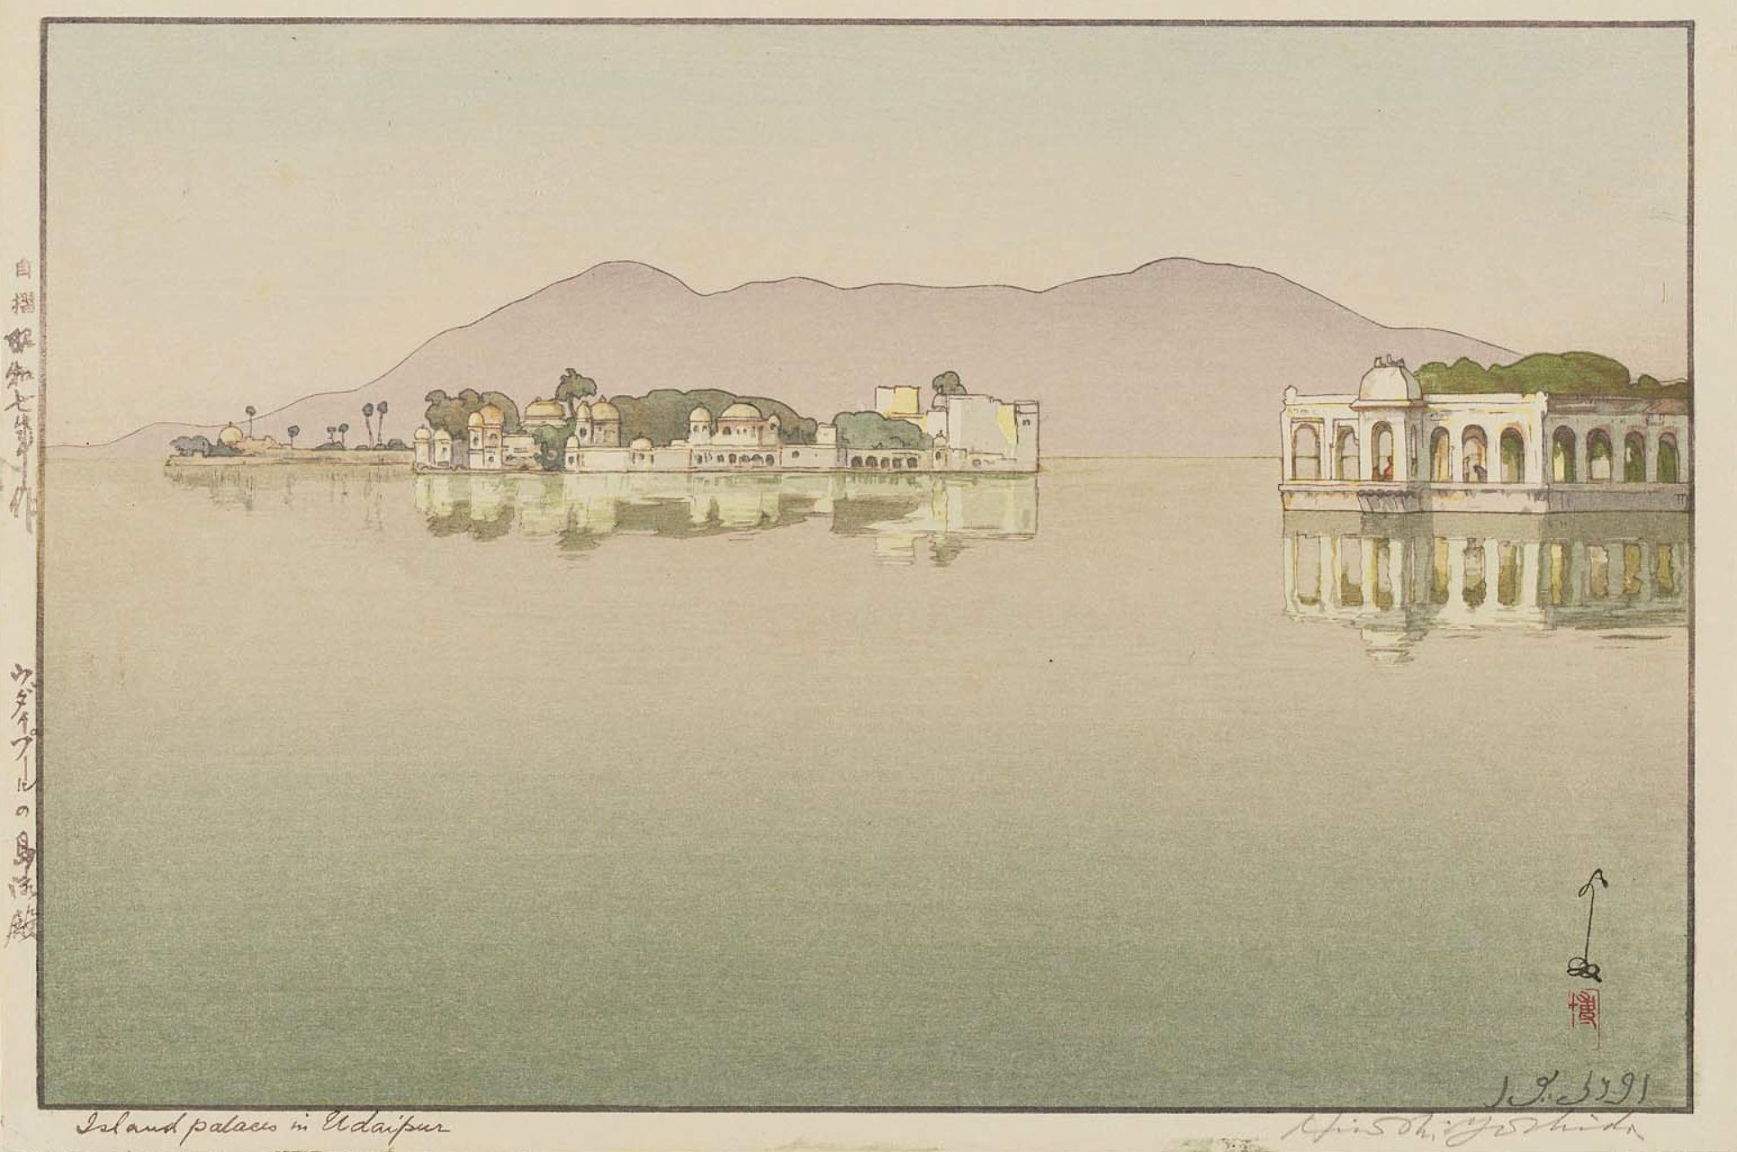 Hiroshi Yoshida “Island Palaces in Udaipur” 1932 woodblock print